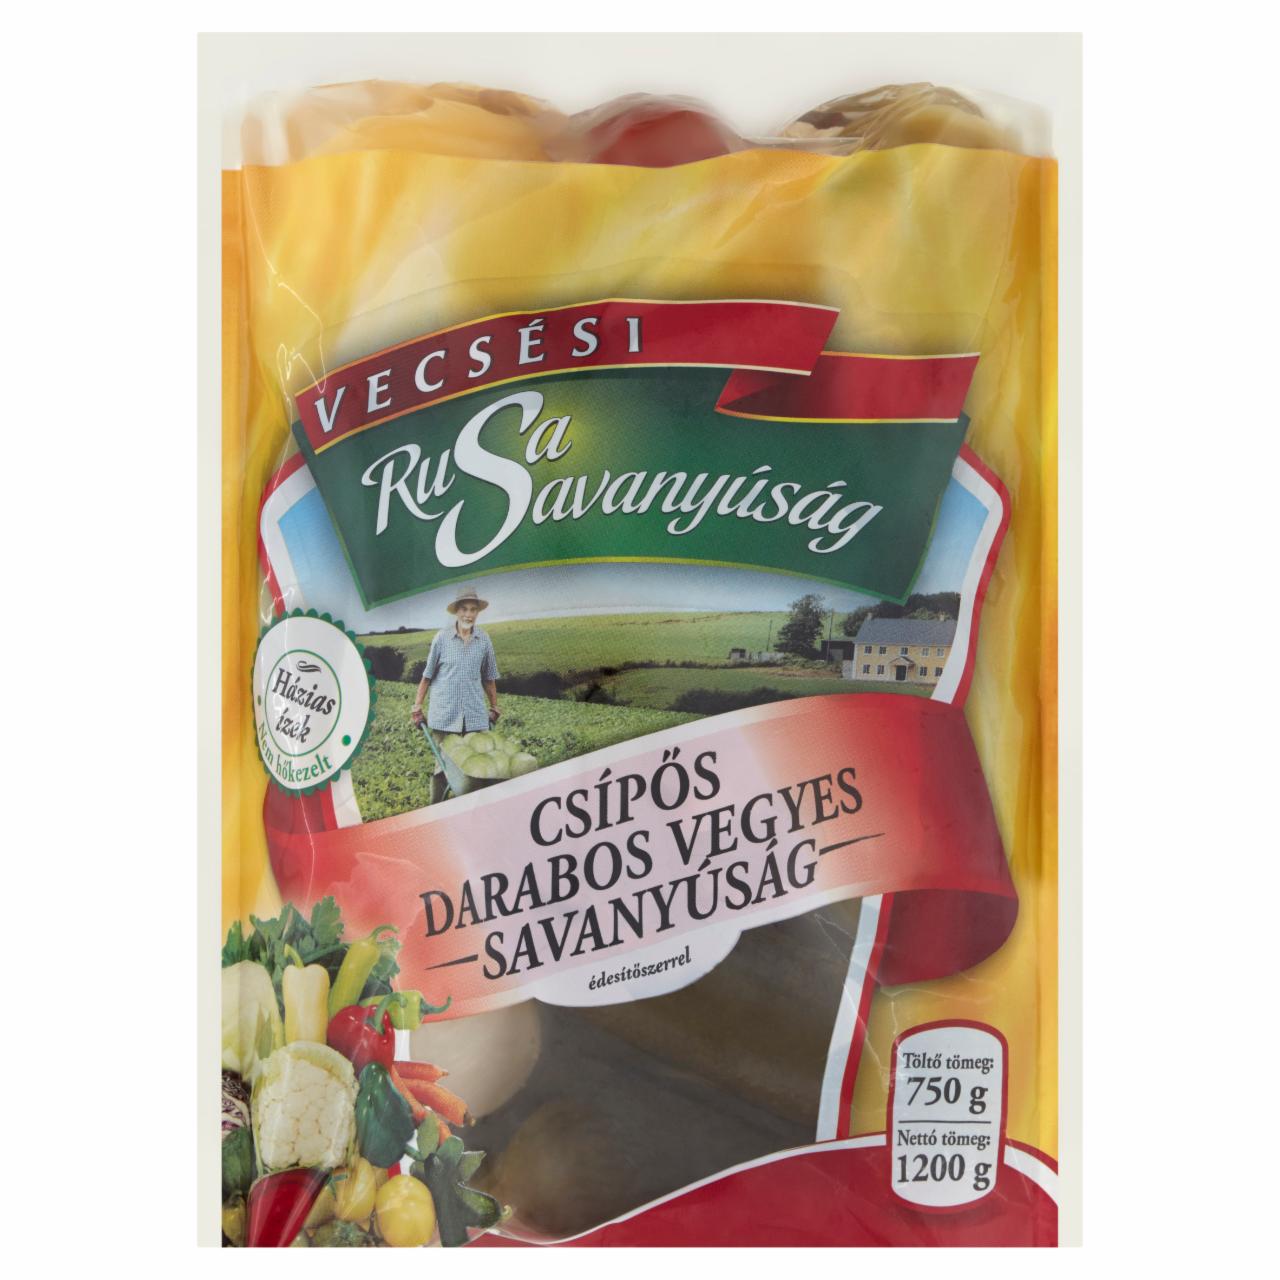 Képek - Rusa Savanyúság csípős darabos vegyes savanyúság édesítőszerrel 1200 g